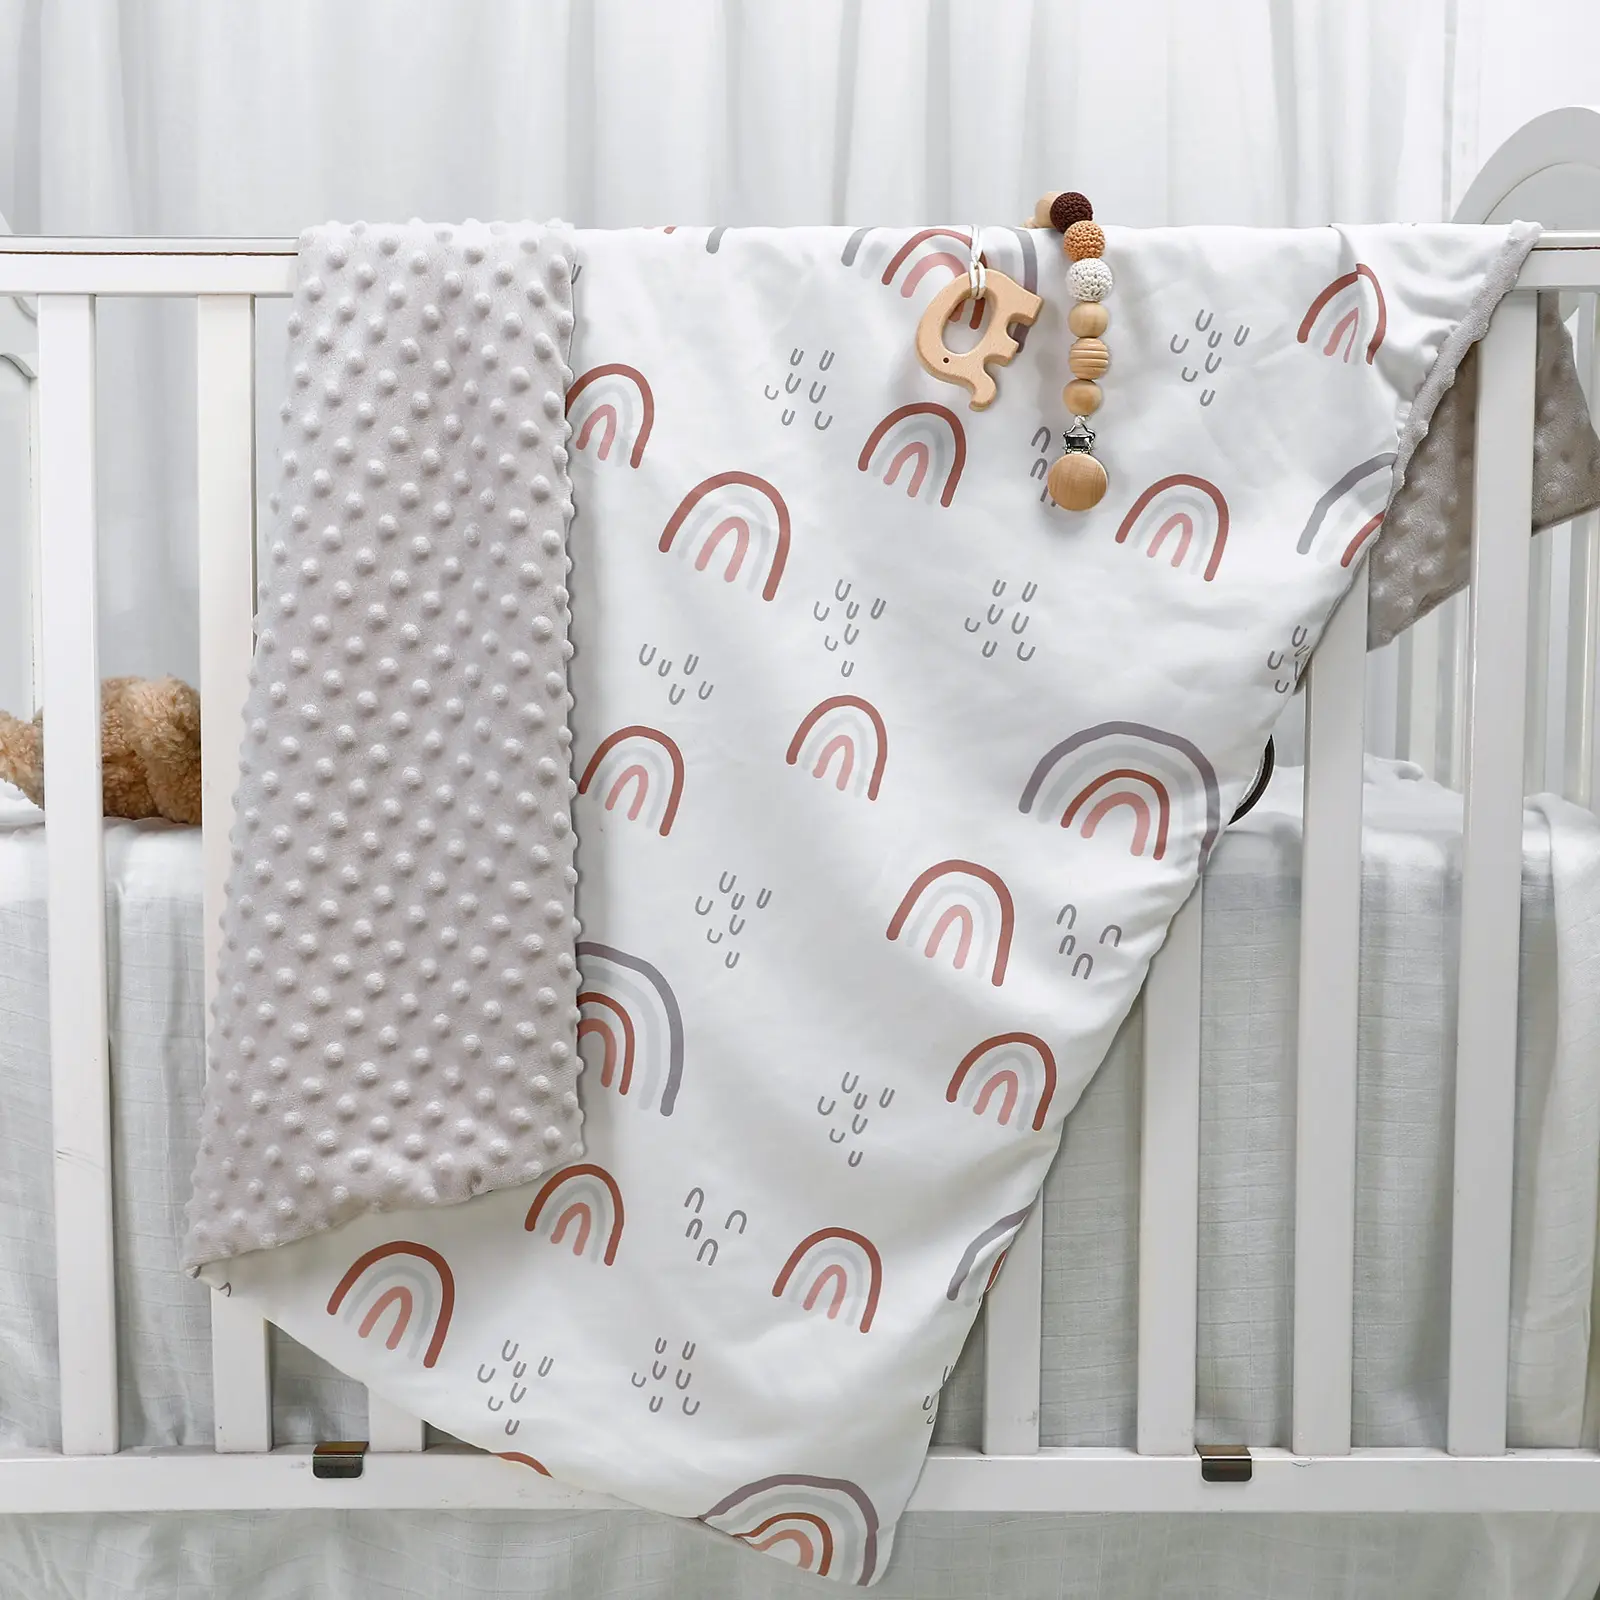 Nuovo Design neonato morbido pile coperta doppio strato inverno avvolgere biancheria da letto culla